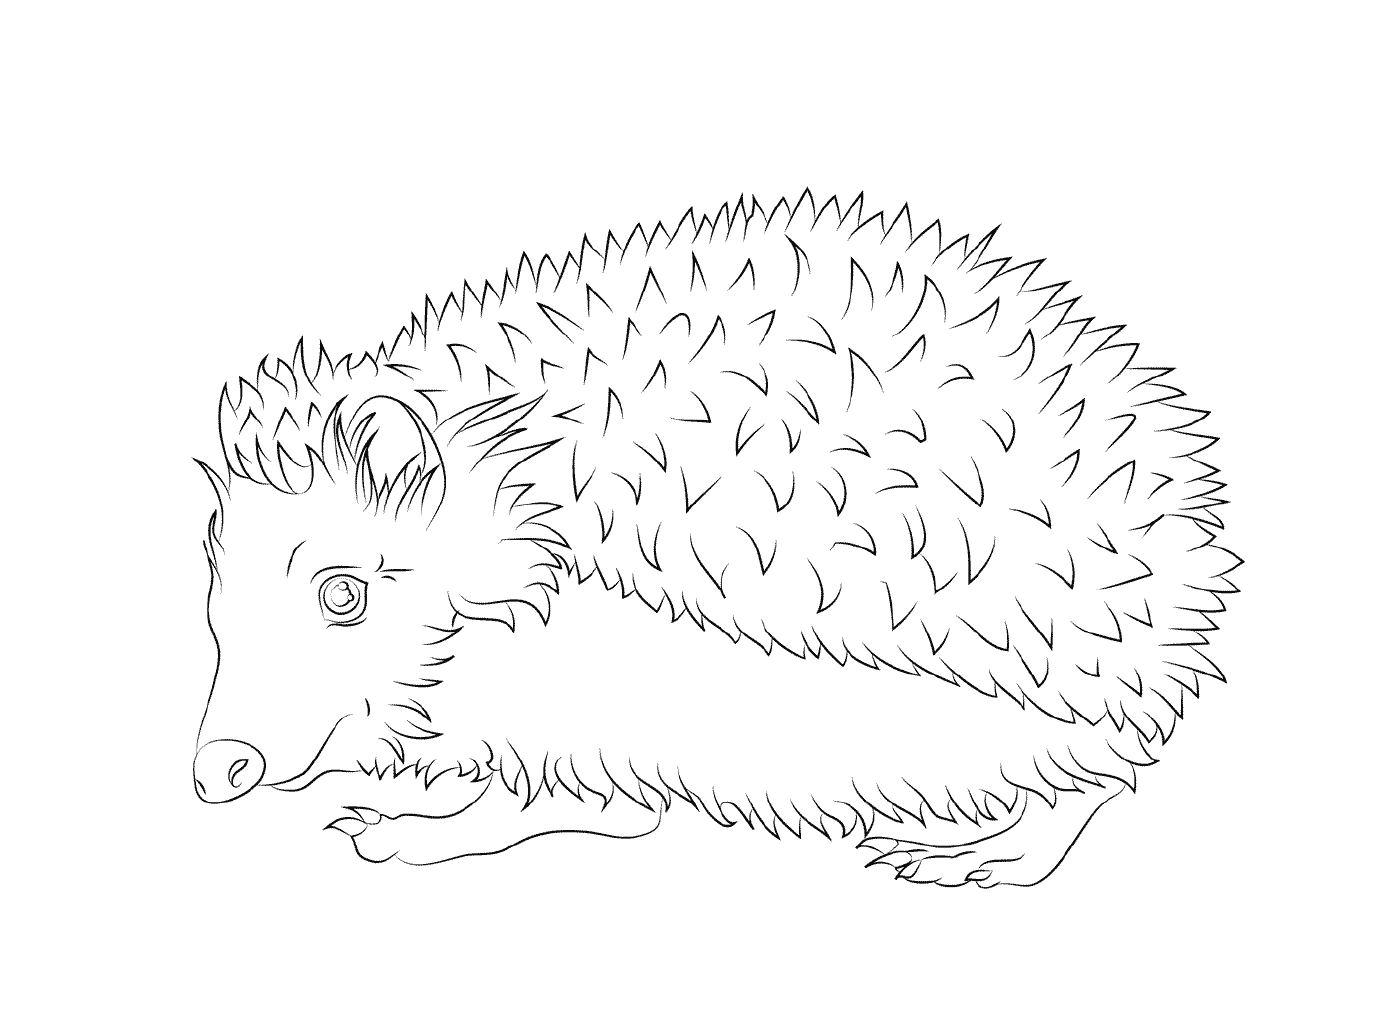  Hedgehog com seus espinhos 